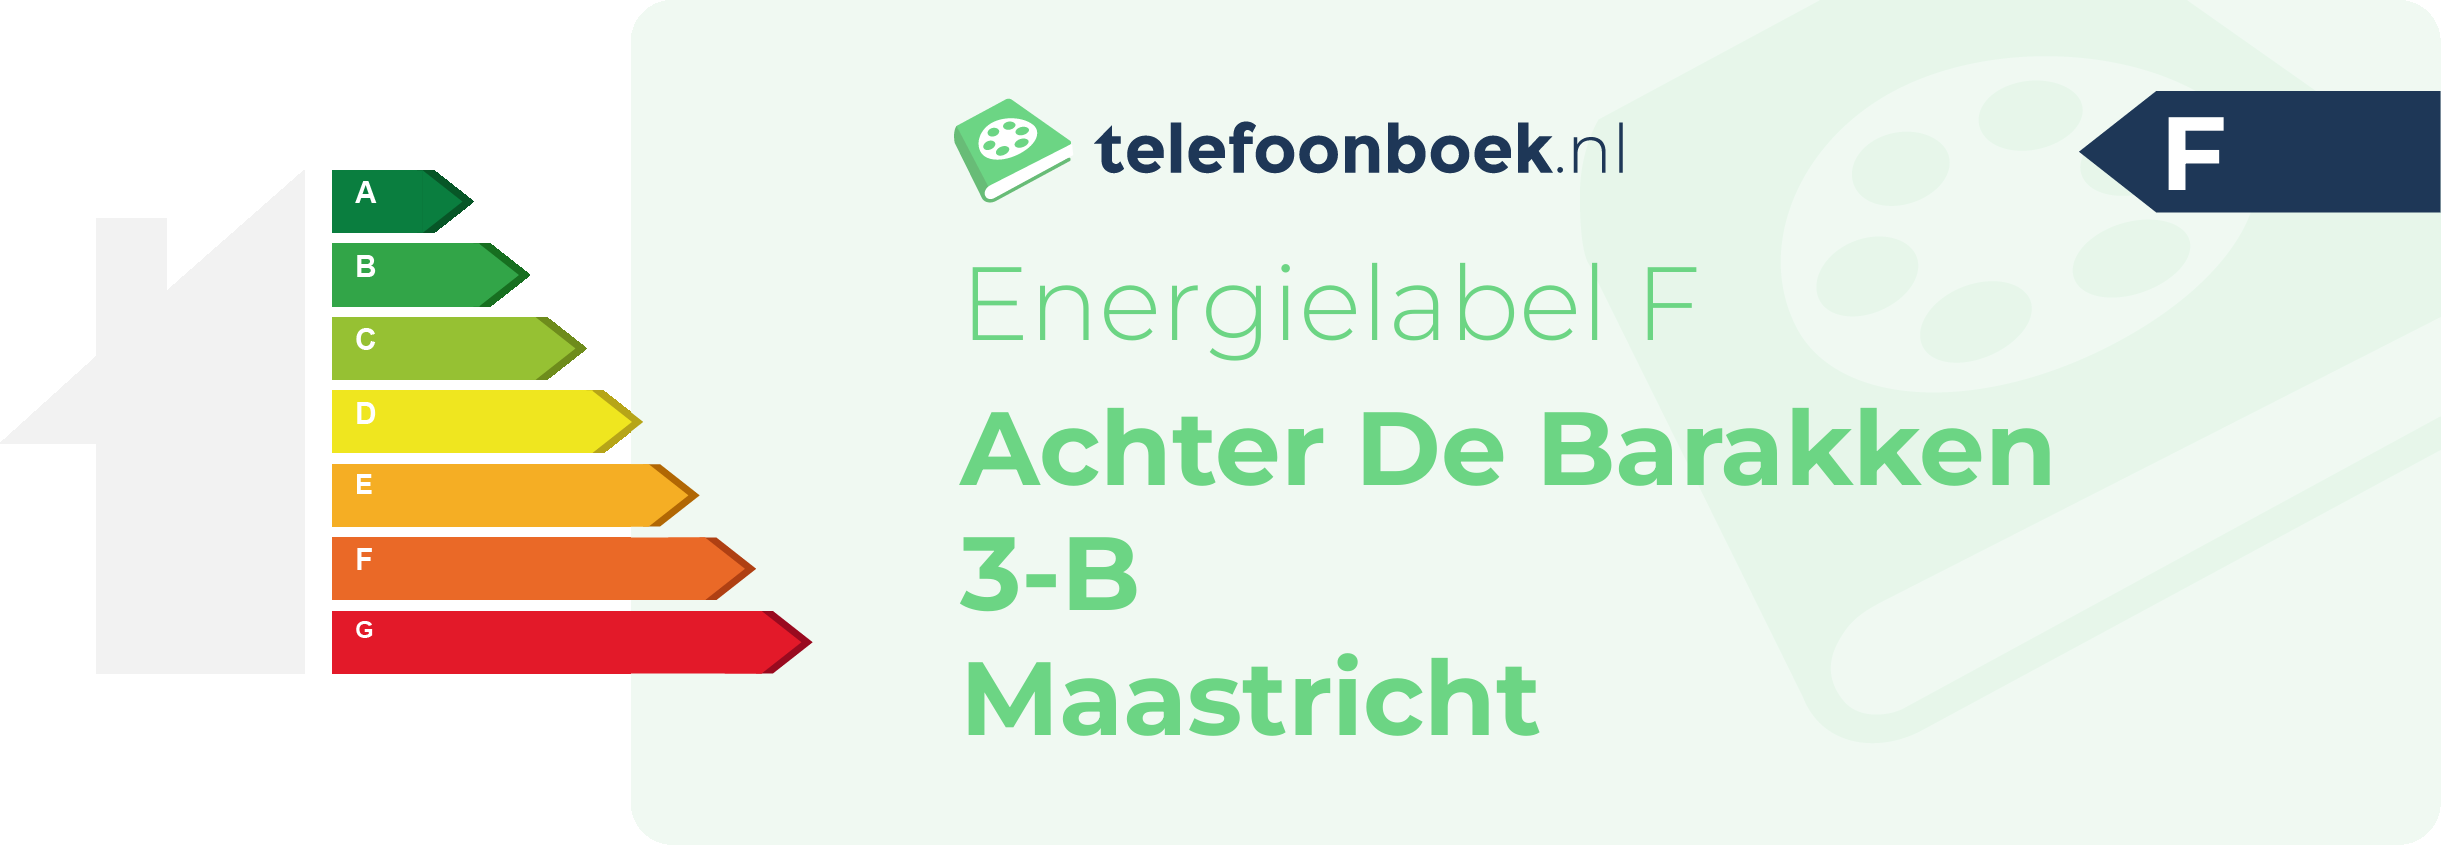 Energielabel Achter De Barakken 3-B Maastricht